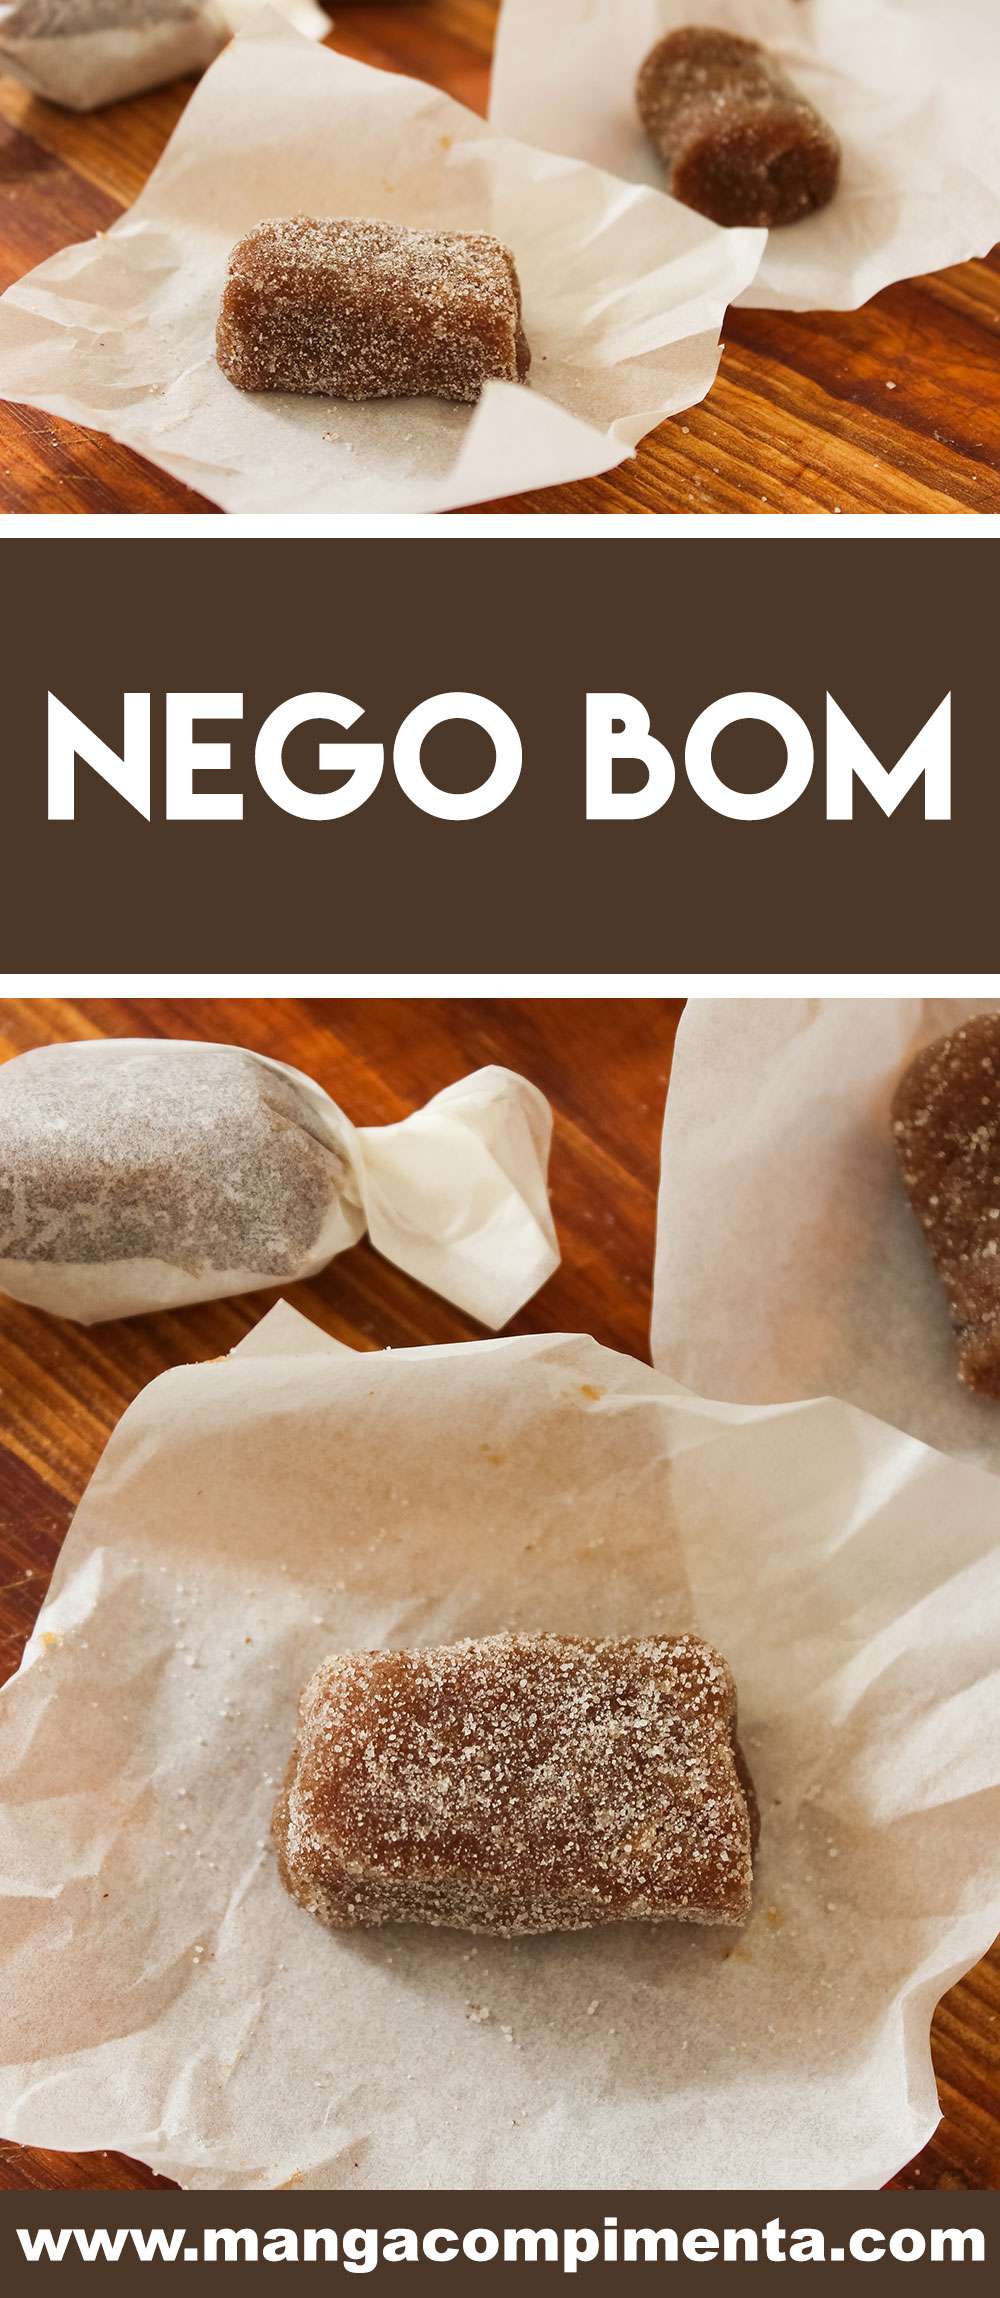 Receita de Nego Bom - prepare um doce de banana caseiro e delicioso, você não vai parar de comer.